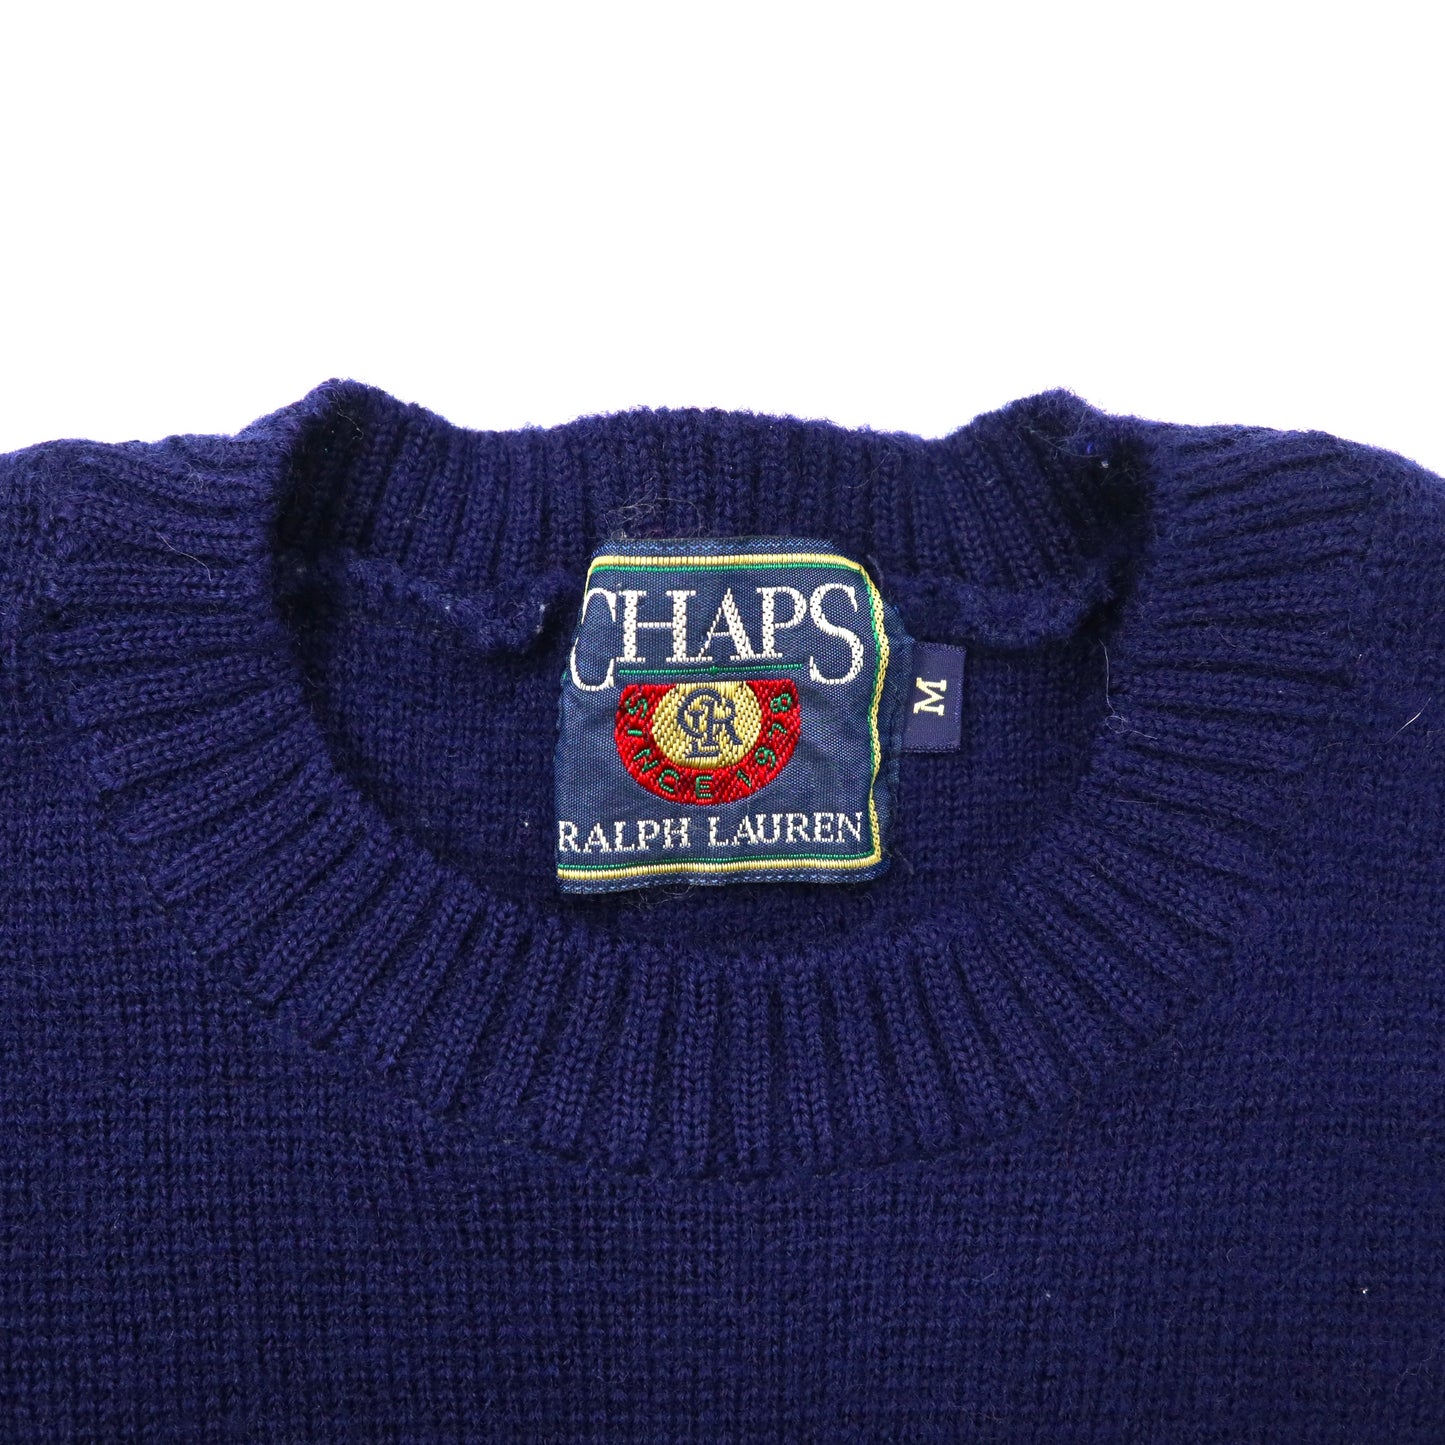 CHAPS RALPH LAUREN ハイゲージニット セーター M ネイビー ウール ワンポイントロゴ刺繍 90年代 日本製